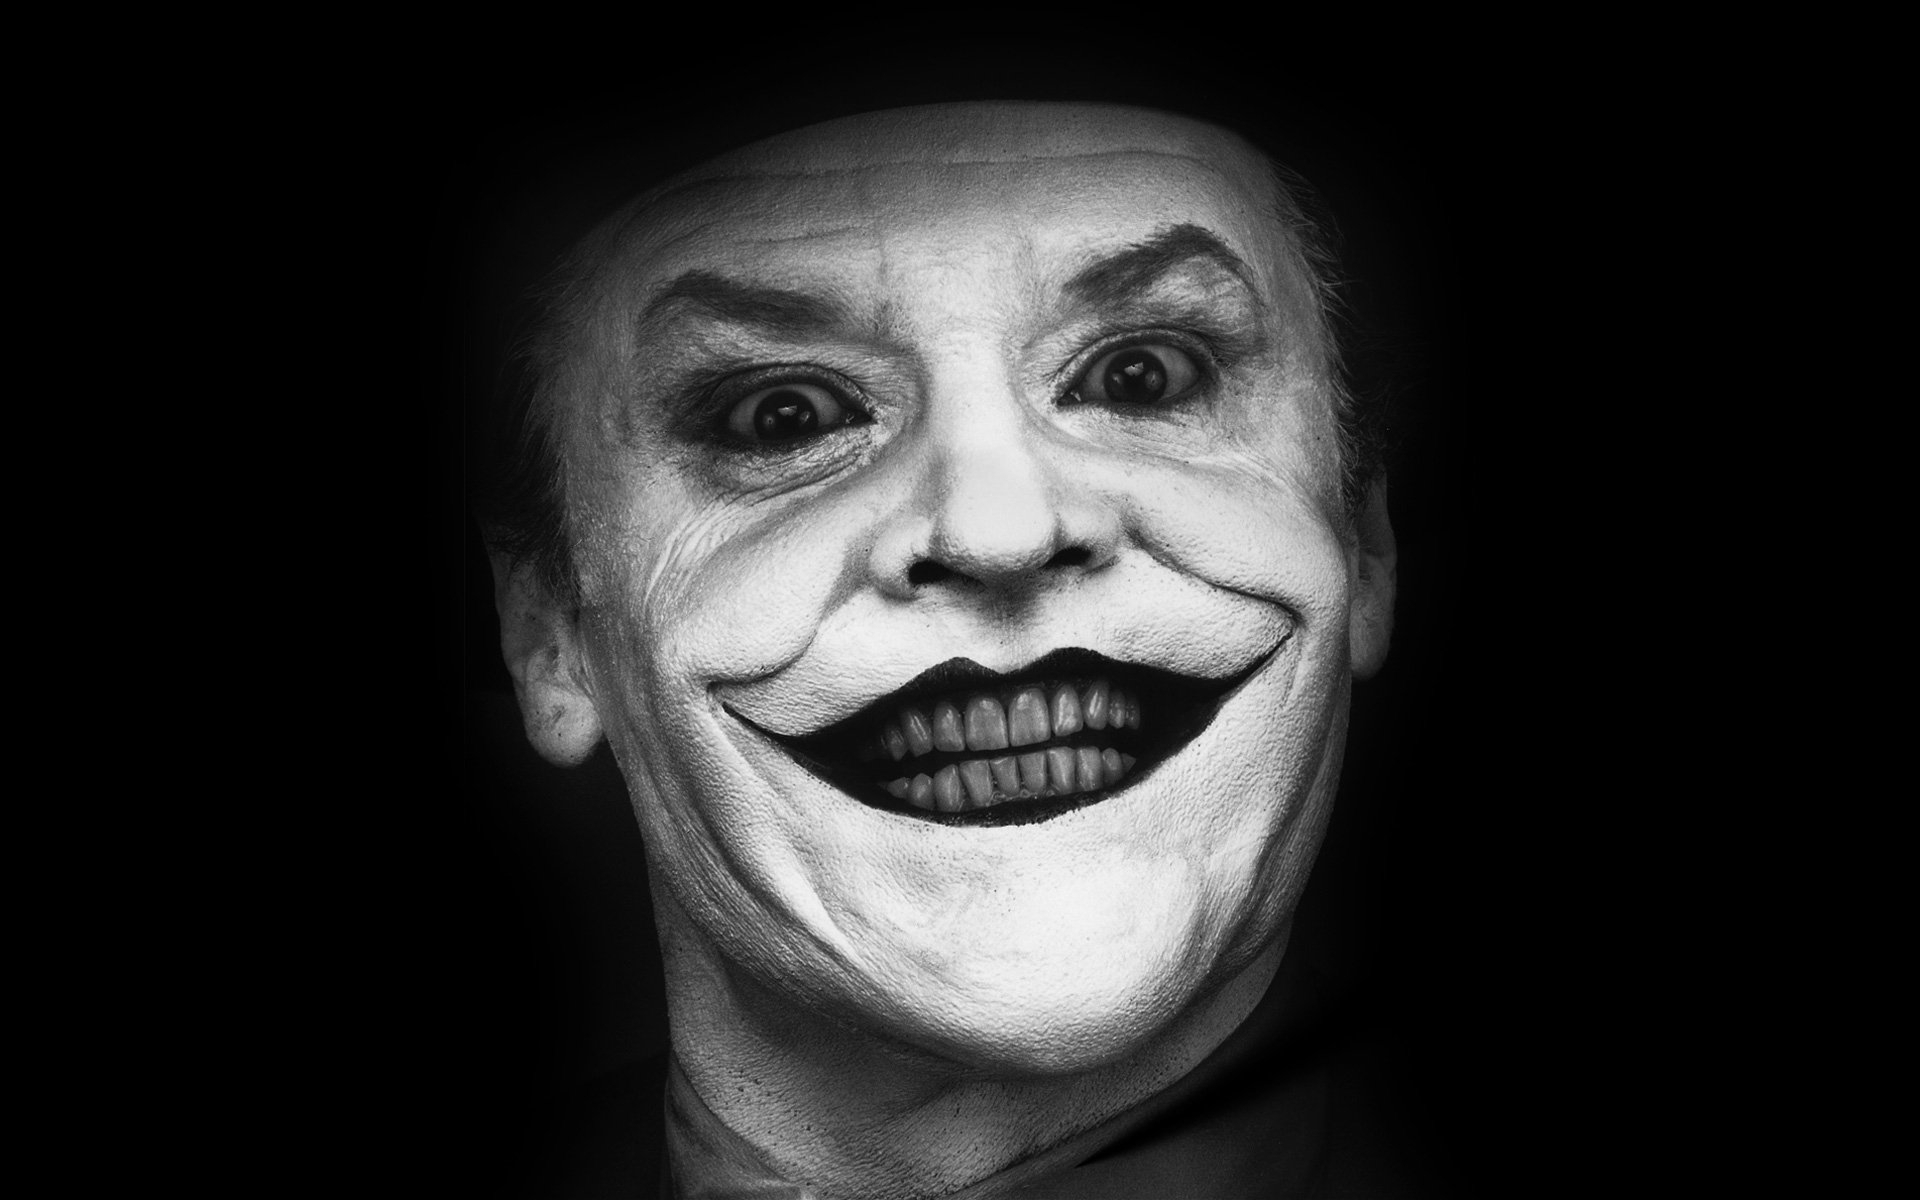 10 New Jack Nicholson Joker Wallpaper FULL HD 1920×1080 For PC Desktop